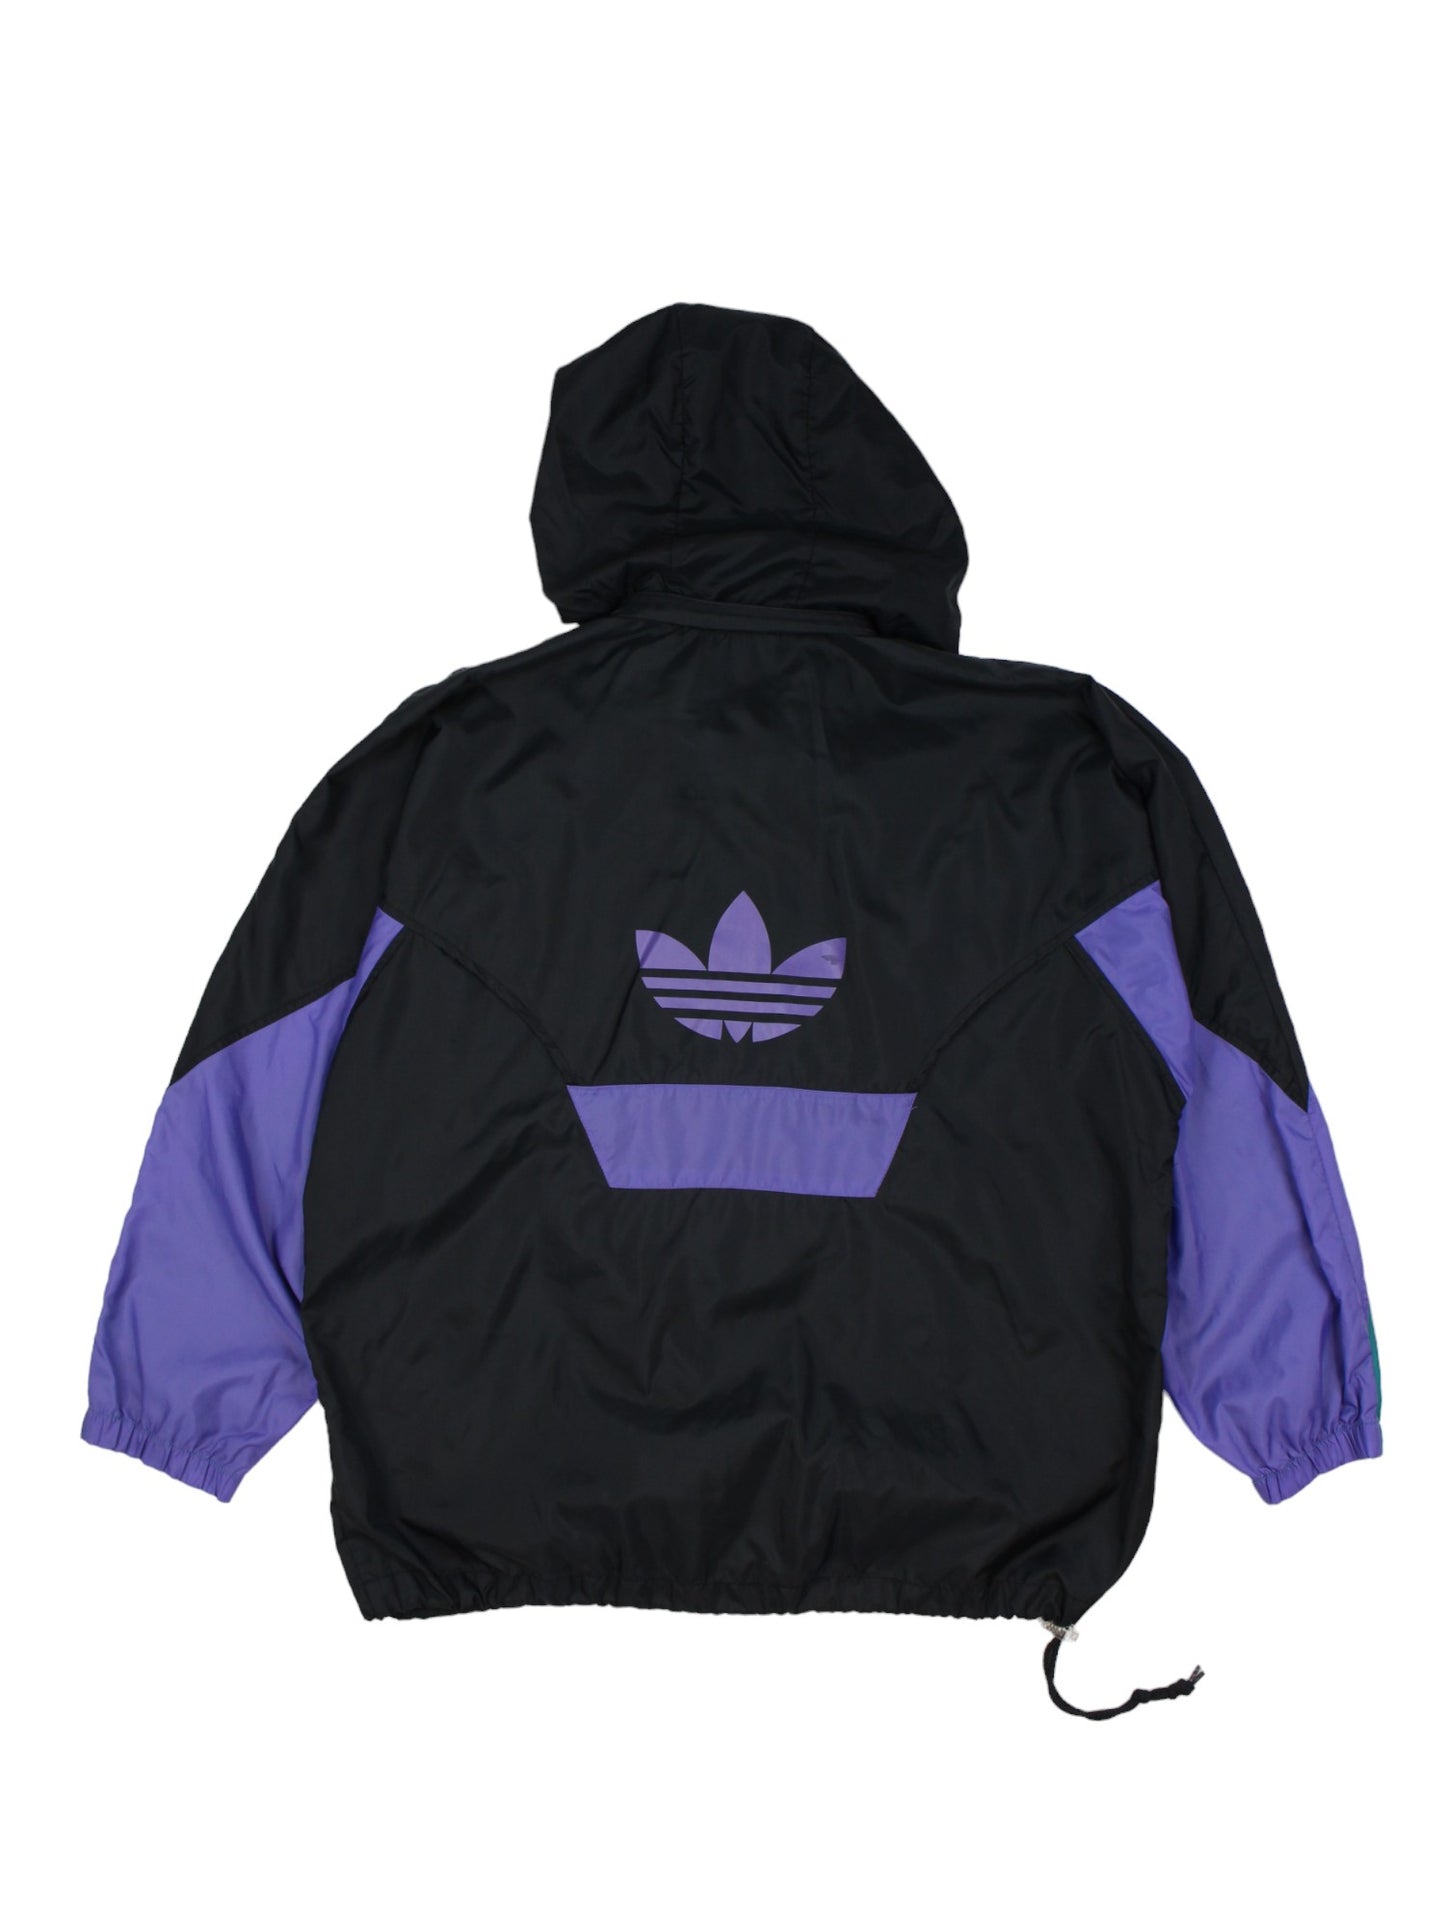 90s Adidas Black Light Pullover Jacket (XL)